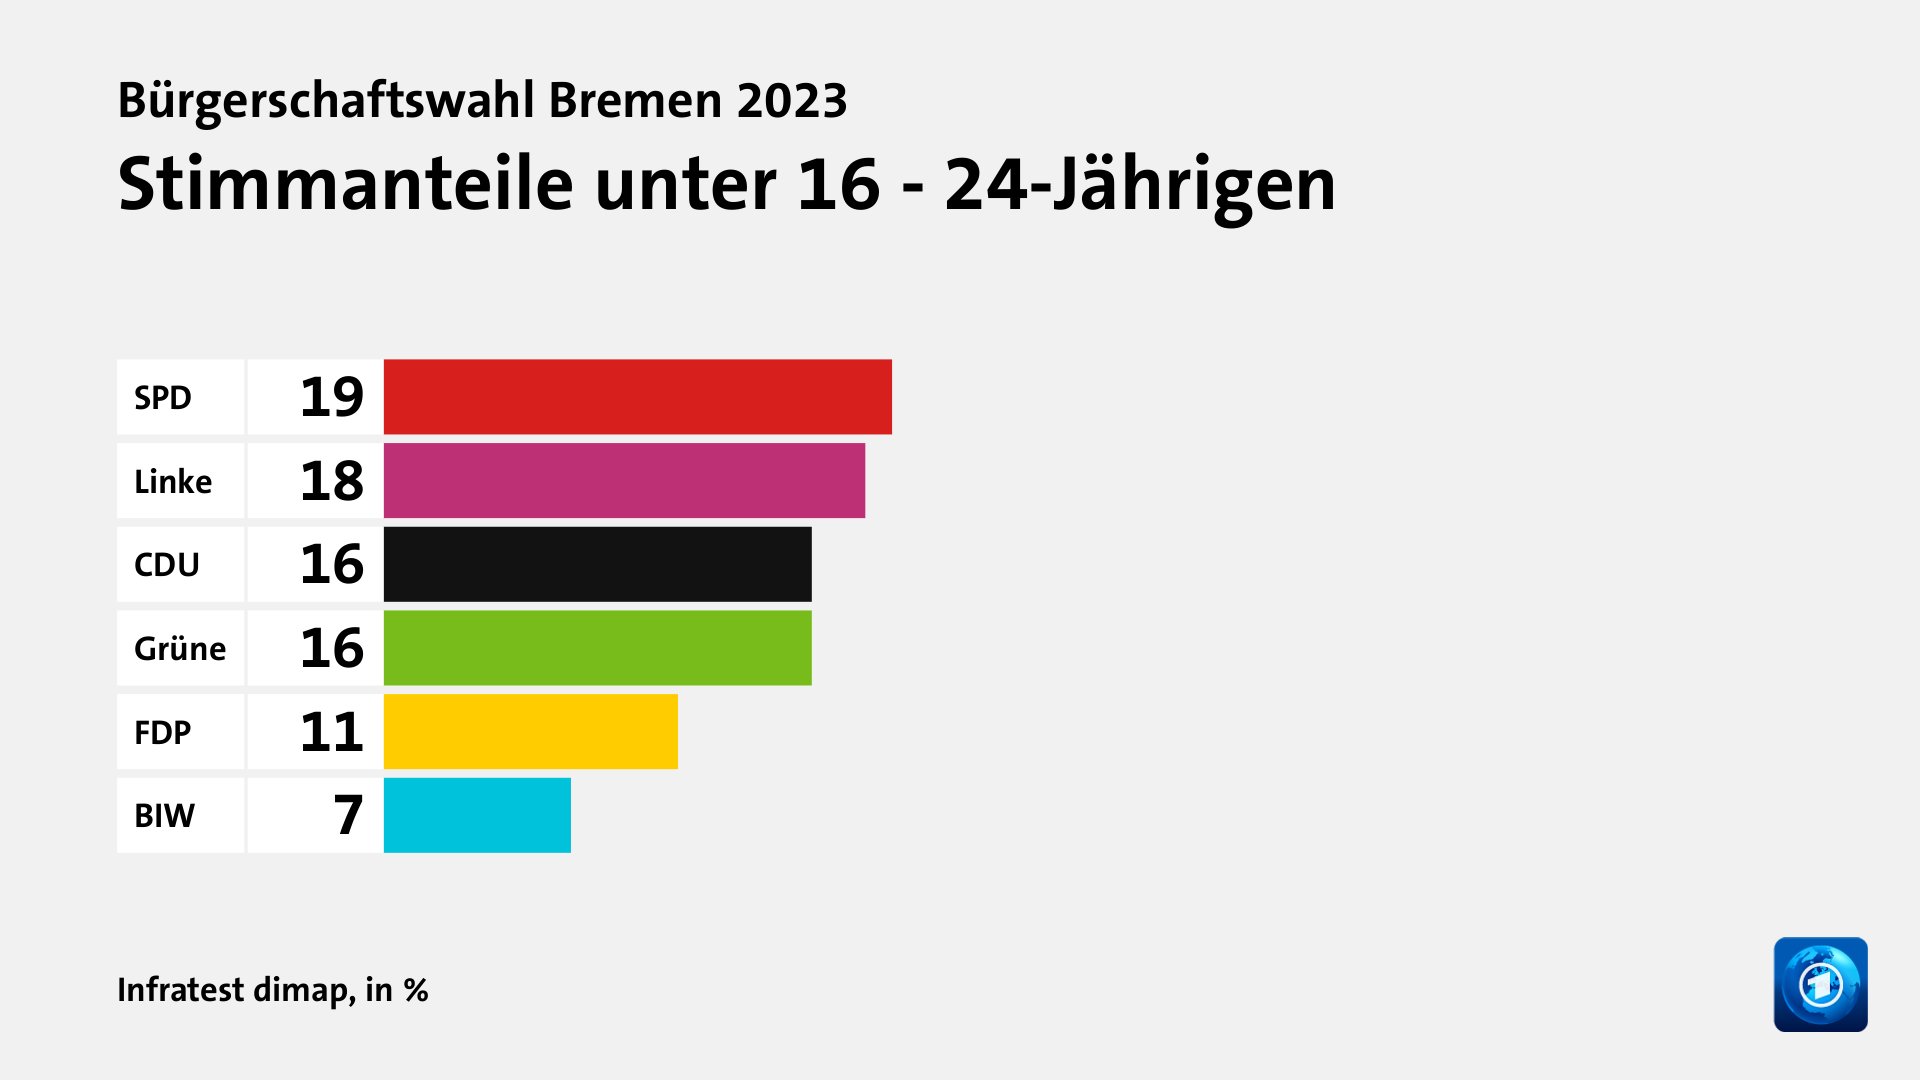 Stimmanteile unter 16 - 24-Jährigen, in %: SPD 19, Linke 18, CDU 16, Grüne 16, FDP 11, BIW 7, Quelle: Infratest dimap